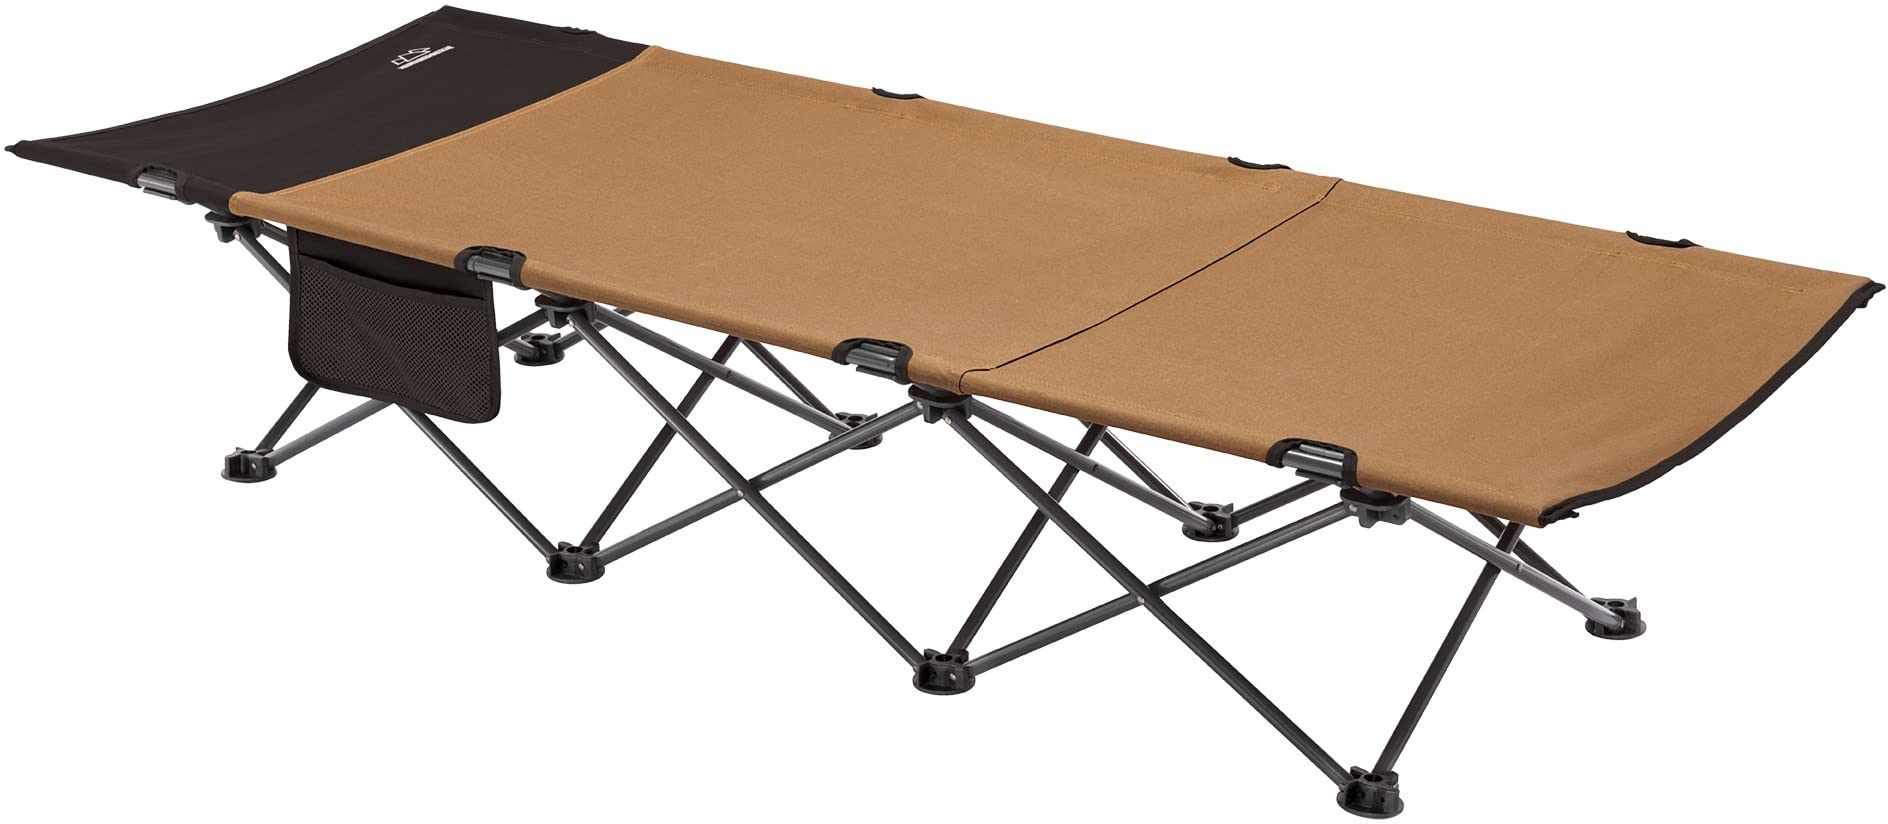 送料無料MOUNTAIN SUMMIT GEAR Horizon Cot Foldable Camping Cot for Children Adults Durable Sleeping Pad with Steel Fra